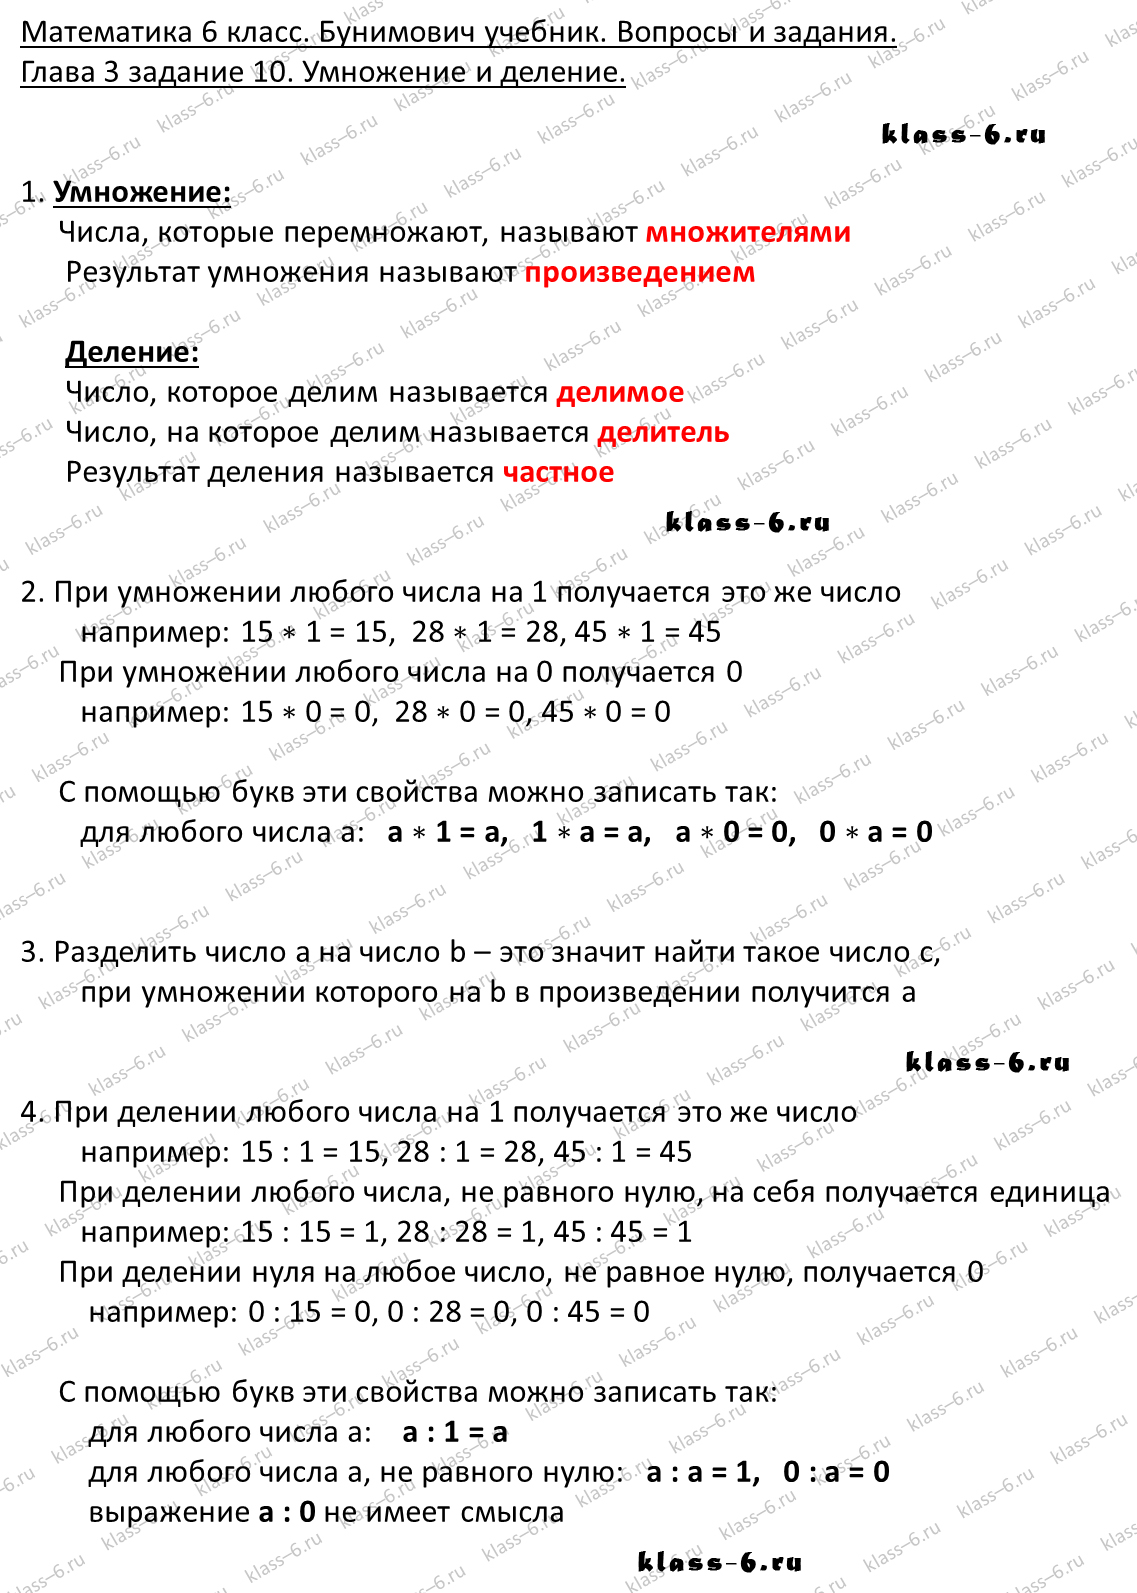 решебник и гдз по математике учебник Бунимович 5 класс вопросы и задания 3-10